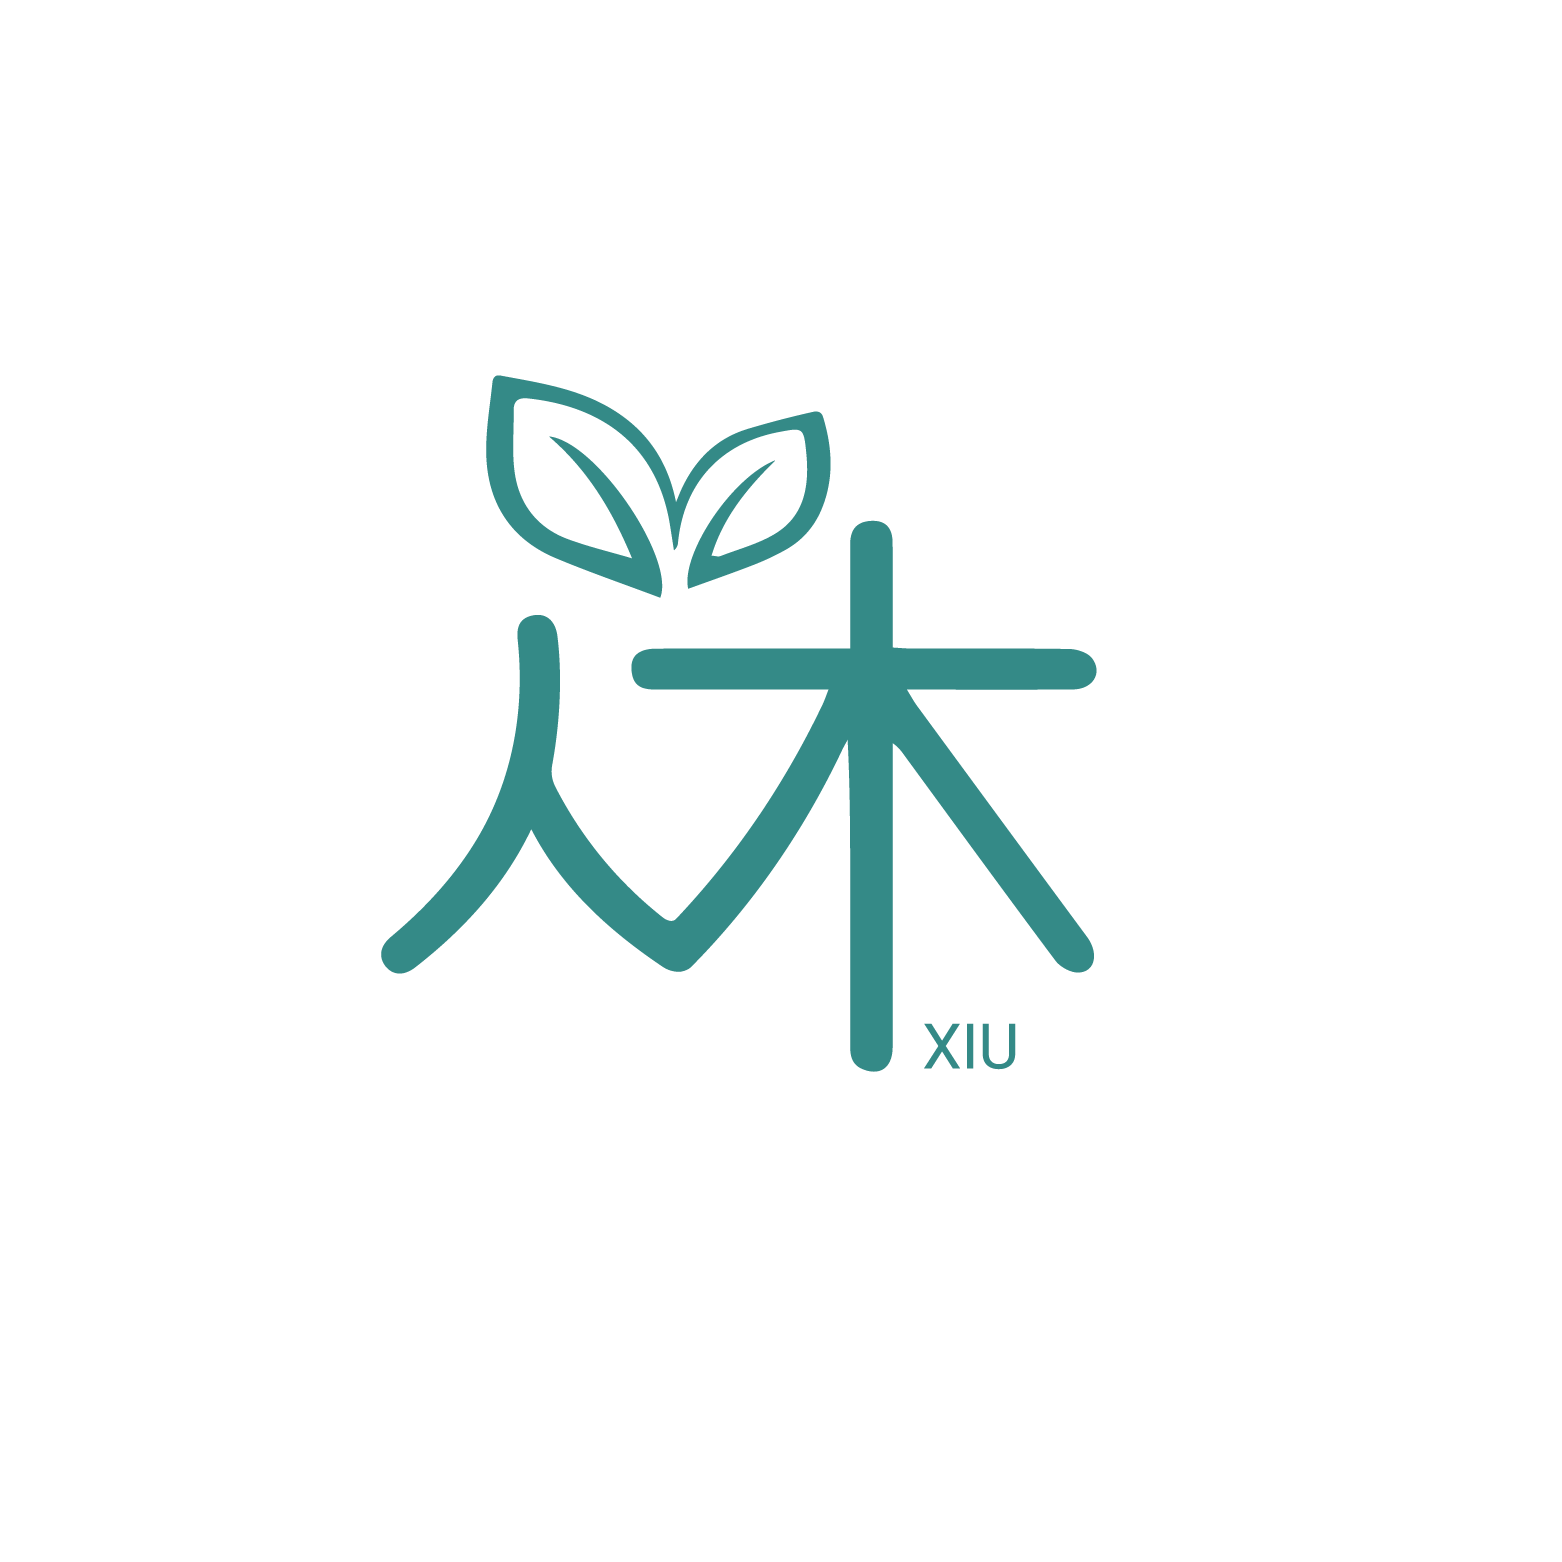 休 XIU | pioneer in Forest Therapy and Rest With Nature | Singapore